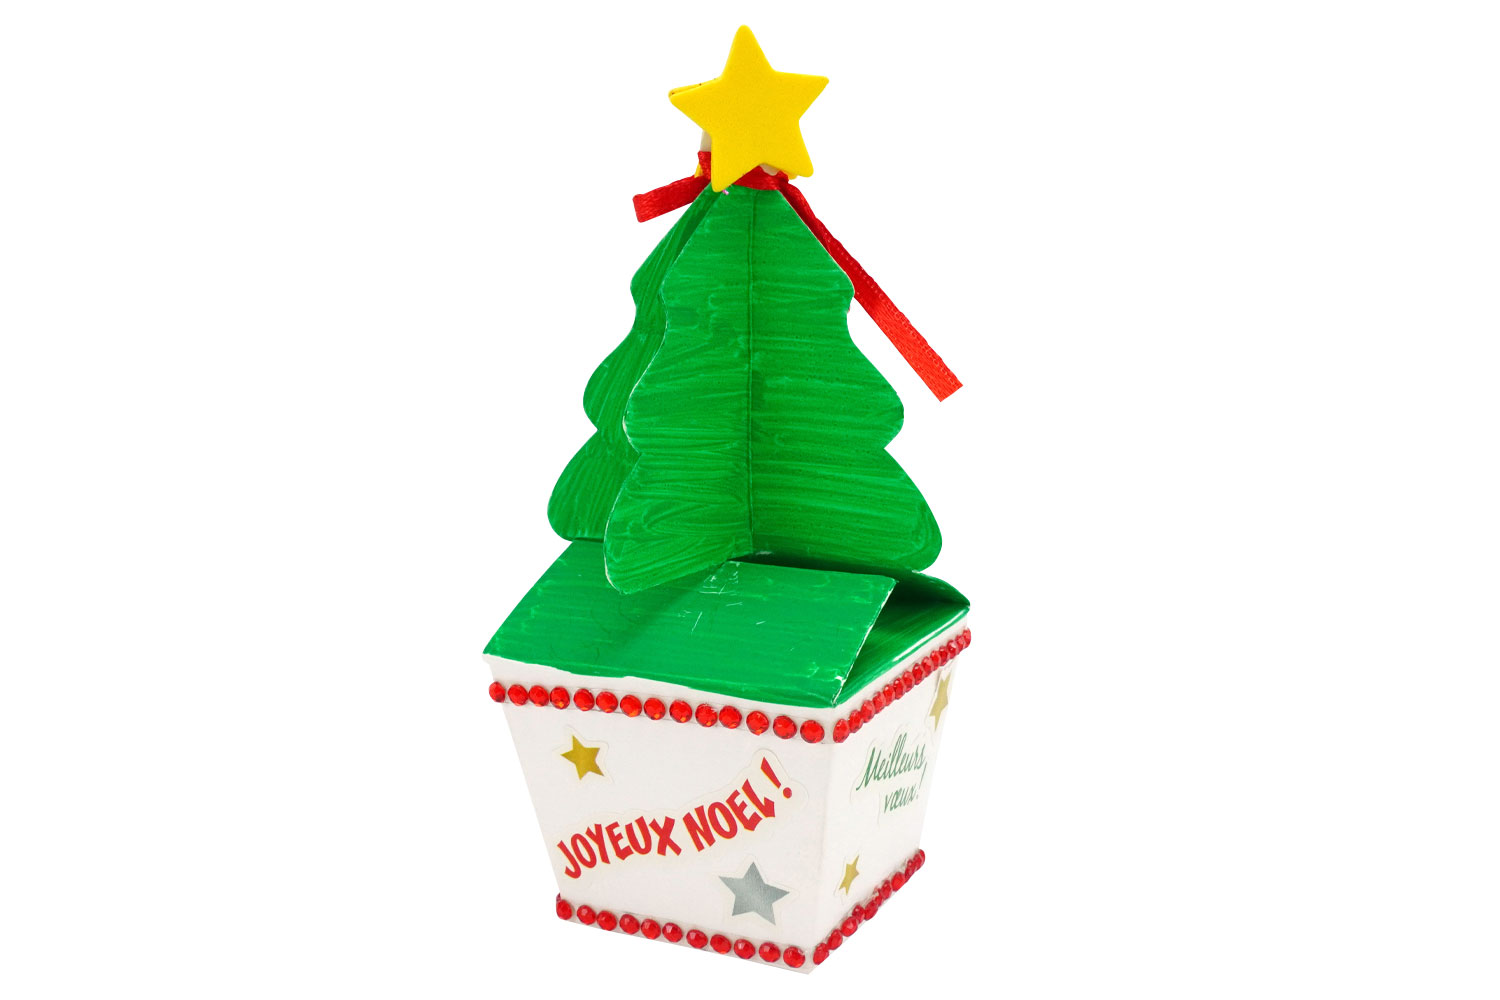 Ensemble D'étiquettes En Papier Kraft De Noël Vintage, Étiquette De Cadeau  De Joyeux Noël, Creuse, Père Noël, Renne, Arbre De Noël, Étiquette